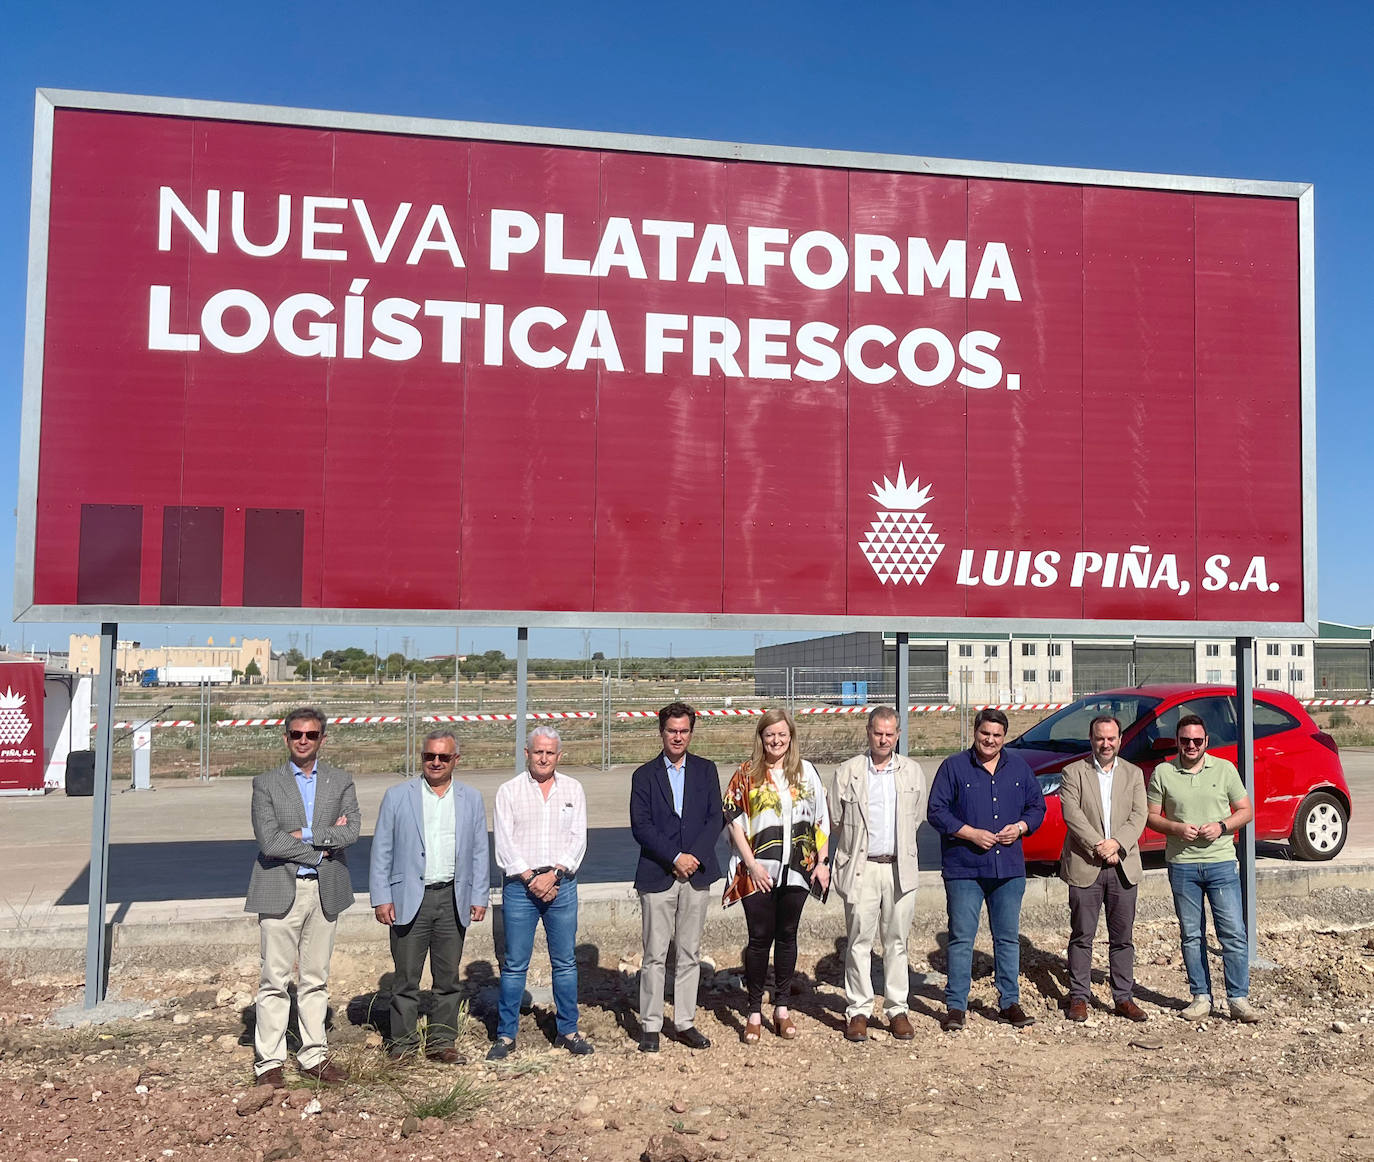 La empresa LUIS PIÑA, S.A. anuncia el inicio de la construcción de la nueva plataforma de distribución de productos frescos en Marmolejo